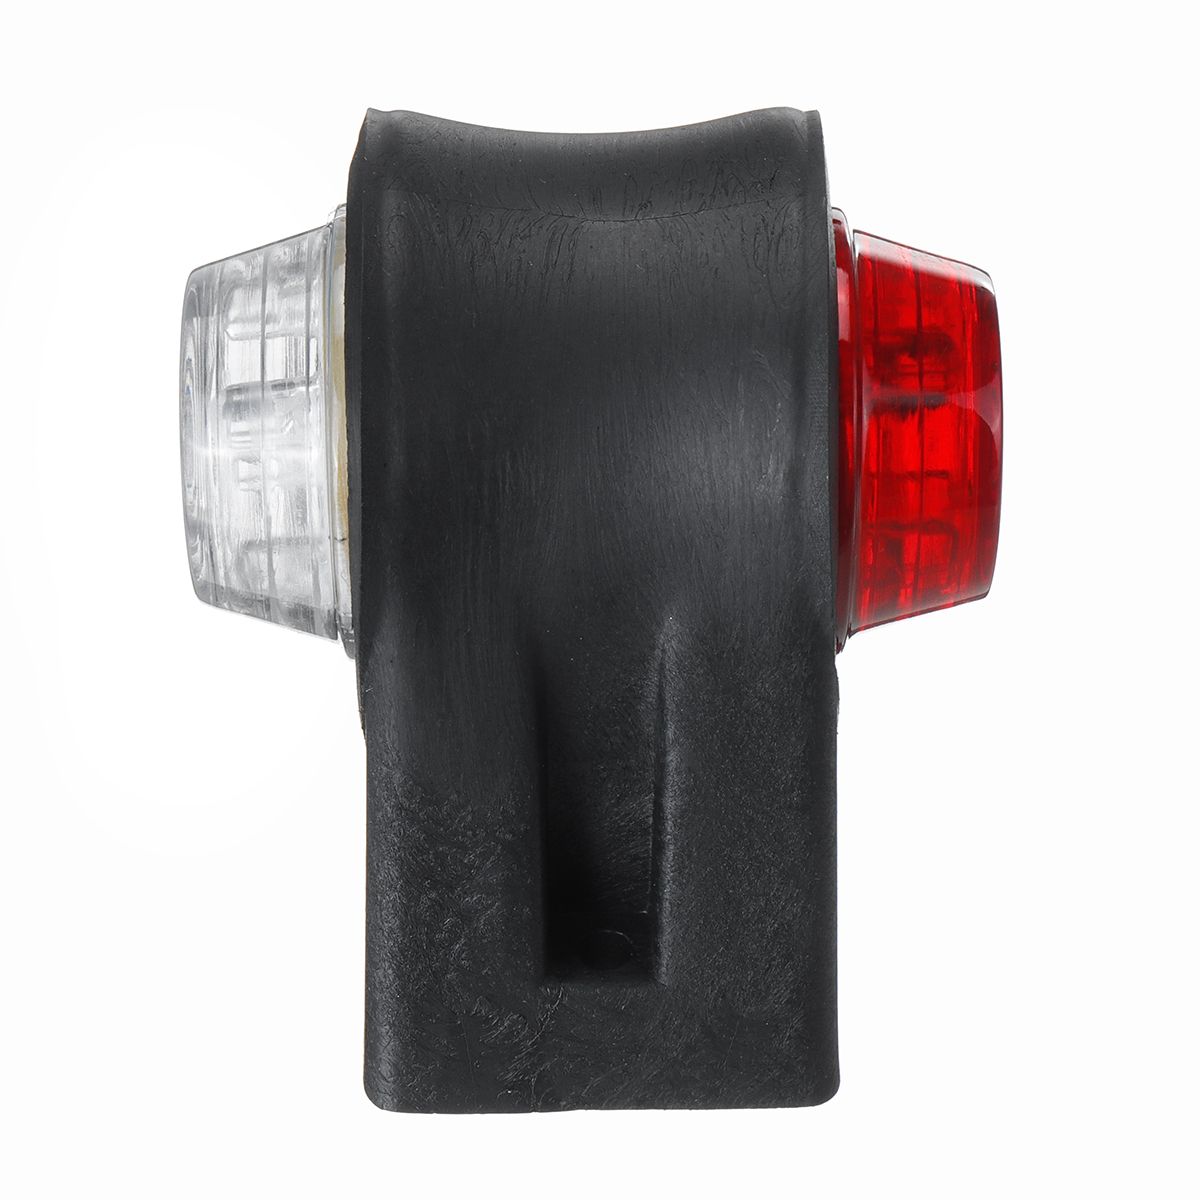 1224V-Mini-Rubber-LED-Double-Side-Marker-Lights-Tail-Brake-Turn-Signal-Lamp-For-Trailer-Truck-1639559